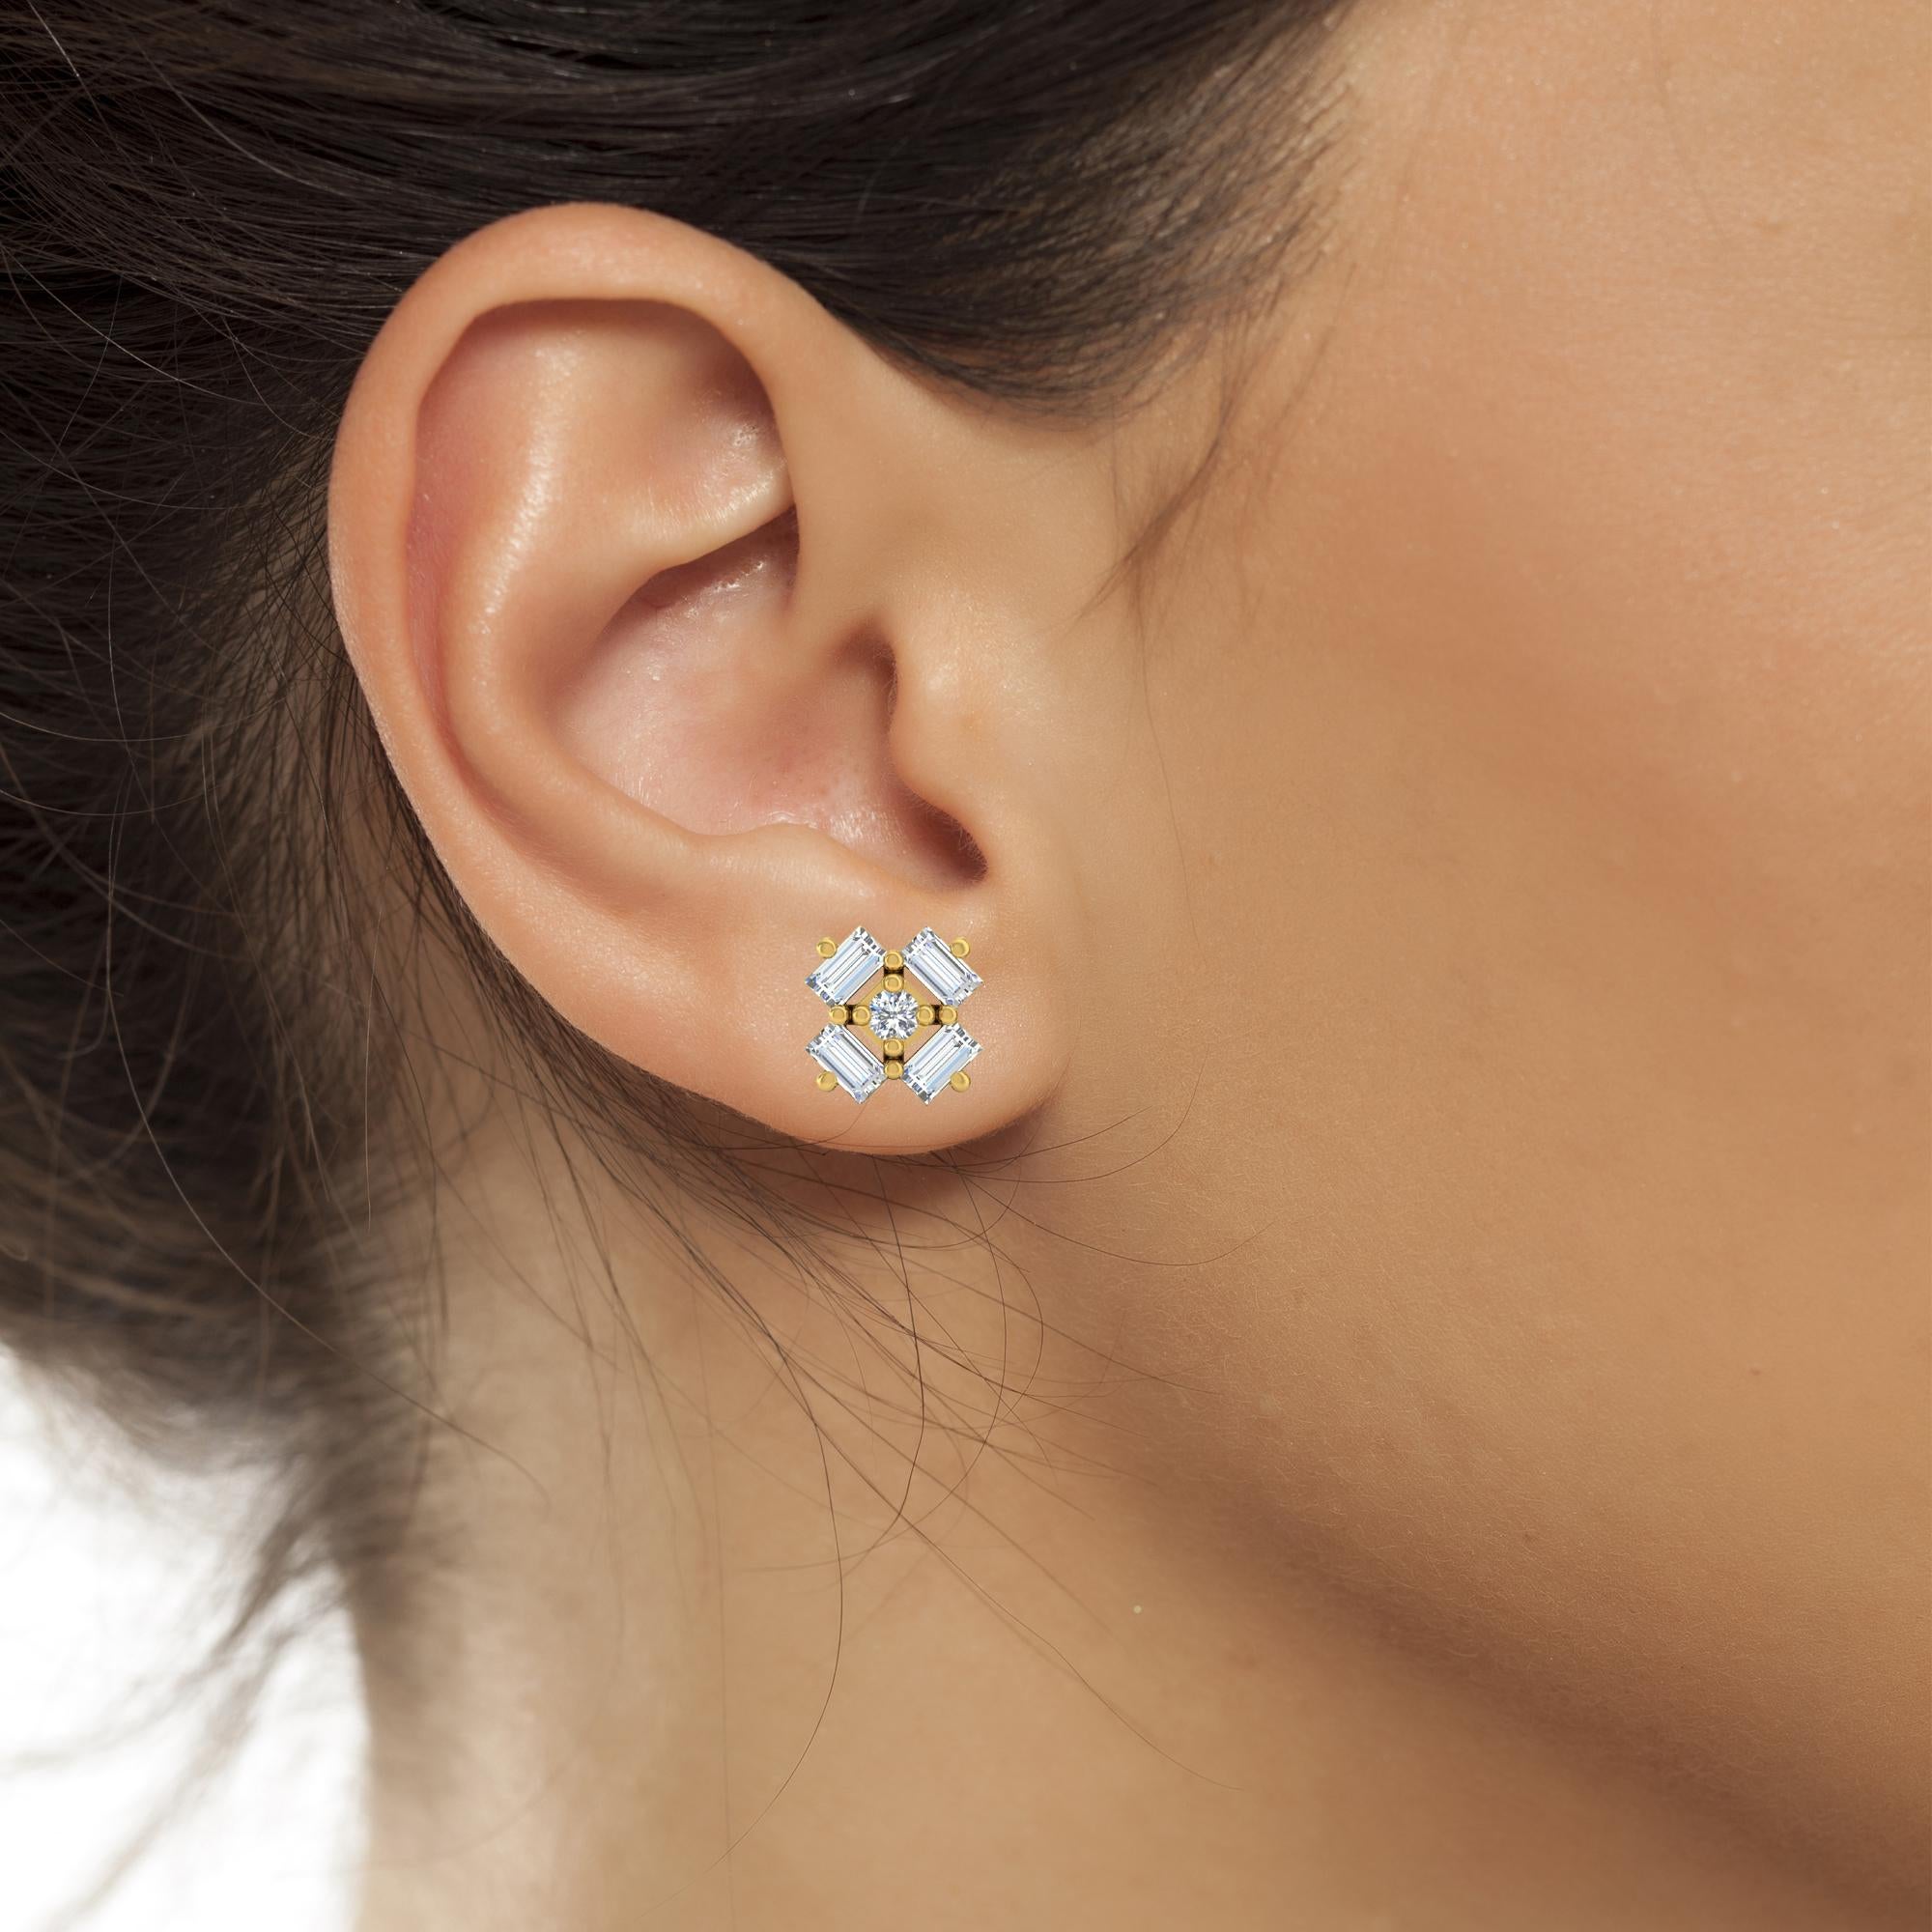 Baguette Cut 0.20 Carat SI Clarity HI Color Baguette Diamond Stud Earrings 14k White Gold For Sale